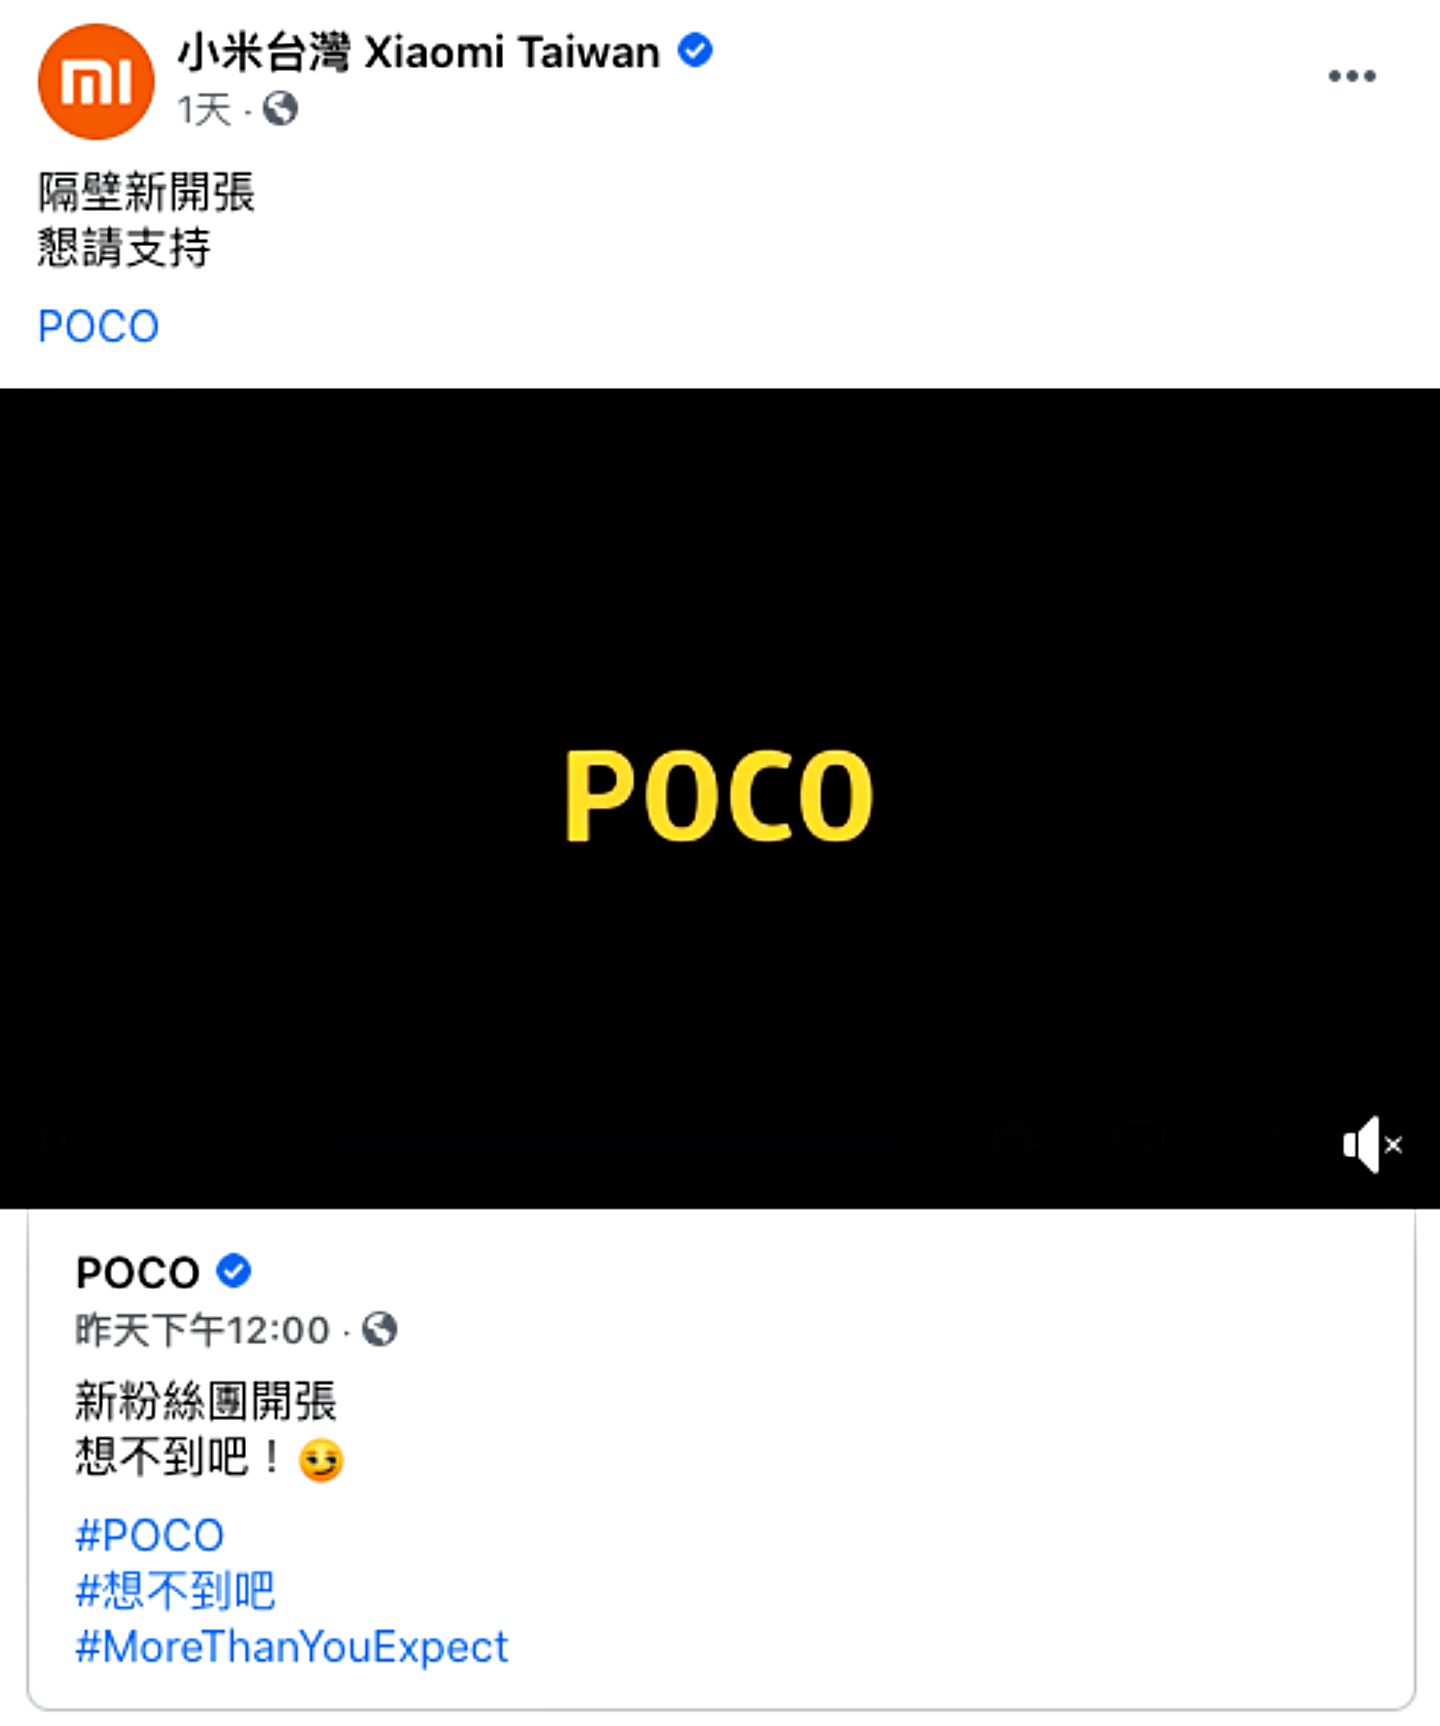 『  POCO  』重返臺灣市場？官方臉書粉專、官網都悄悄上線啦